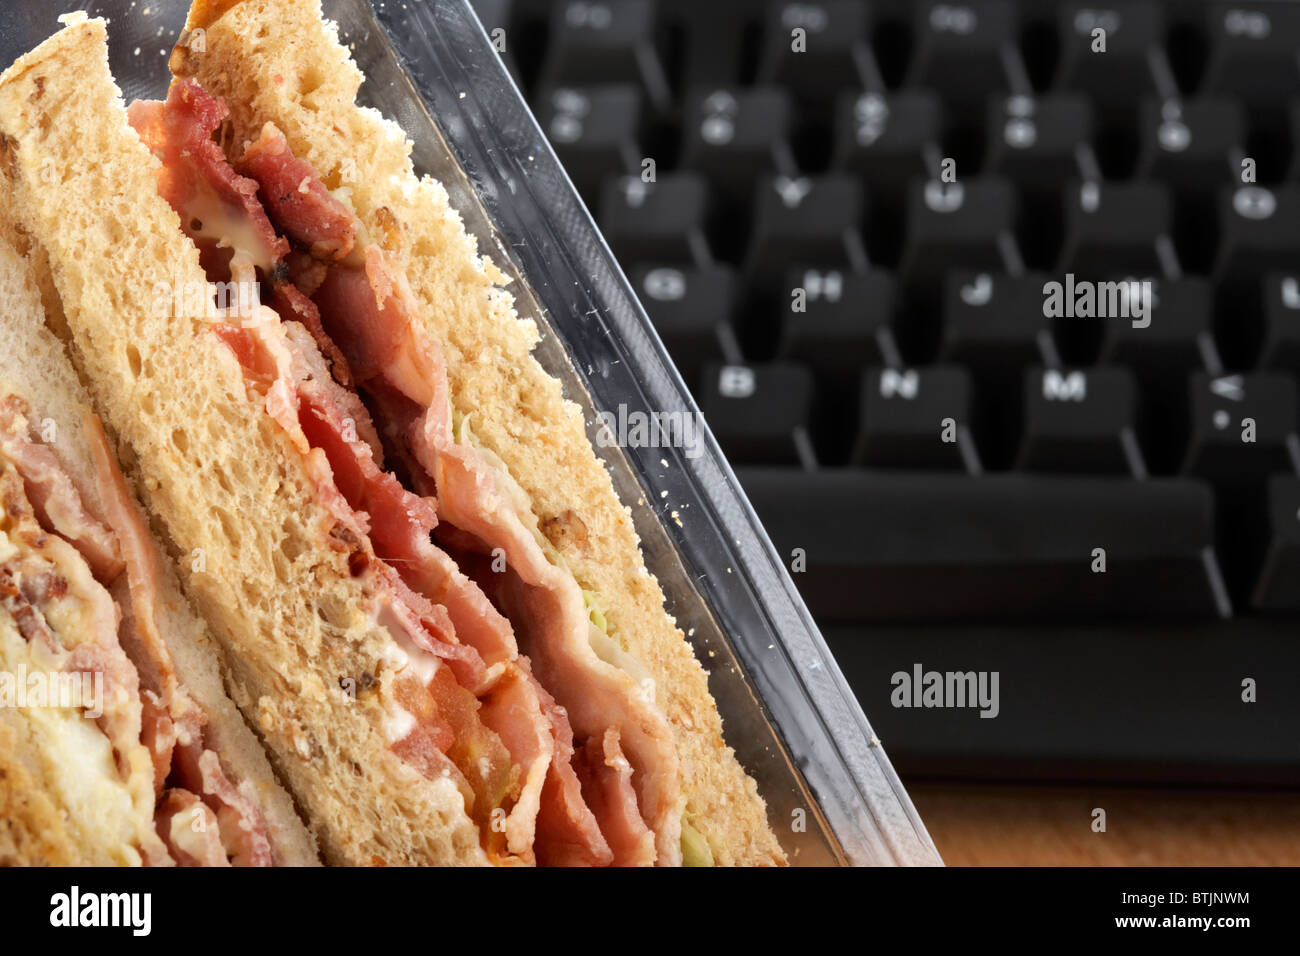 Take-away dreifach Sandwiches im Karton neben Computer-Tastatur zur Mittagszeit Stockfoto